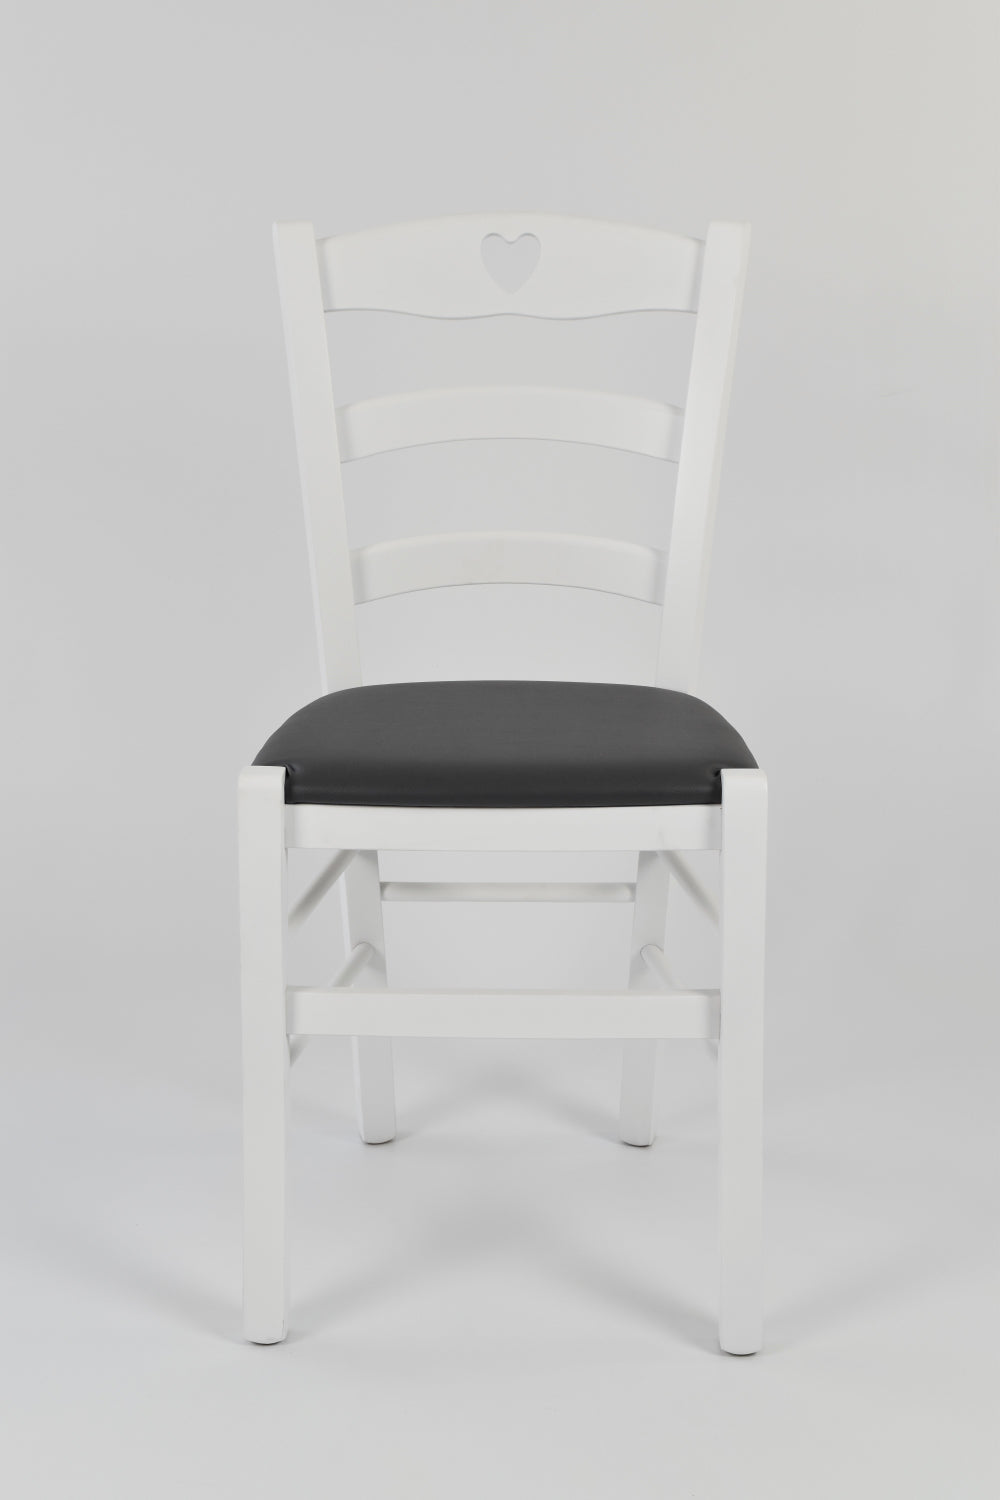 Tommychairs - Set 4 sillas de Cocina y Comedor Cuore, Estructura en Madera de Haya barnizada Color Blanco y Asiento tapizado en Polipiel Gris Oscuro